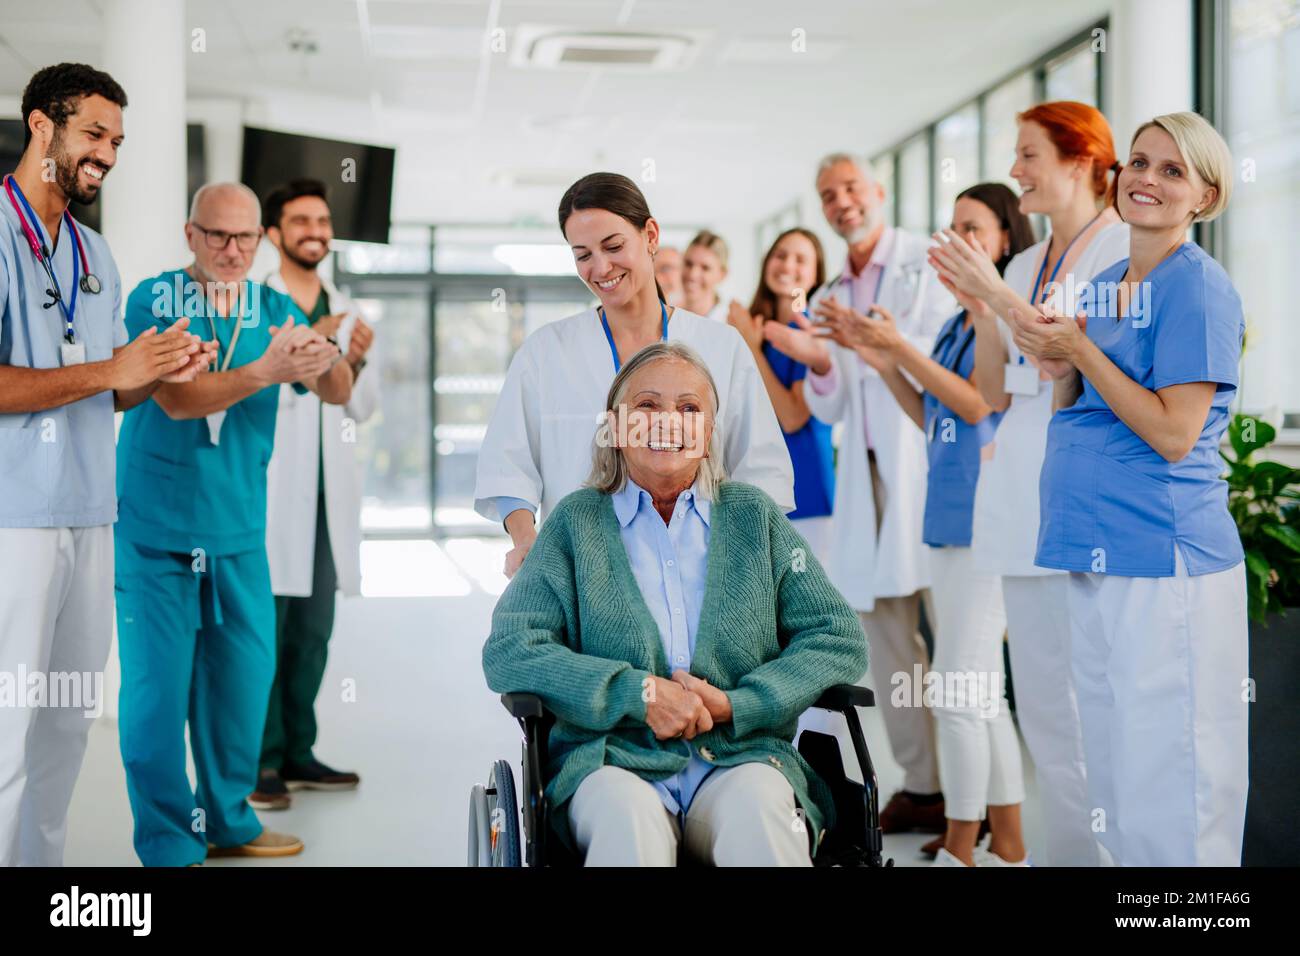 Medizinisches Personal klatscht zu Seniorpatienten, die sich von einer schweren Erkrankung erholt haben. Stockfoto